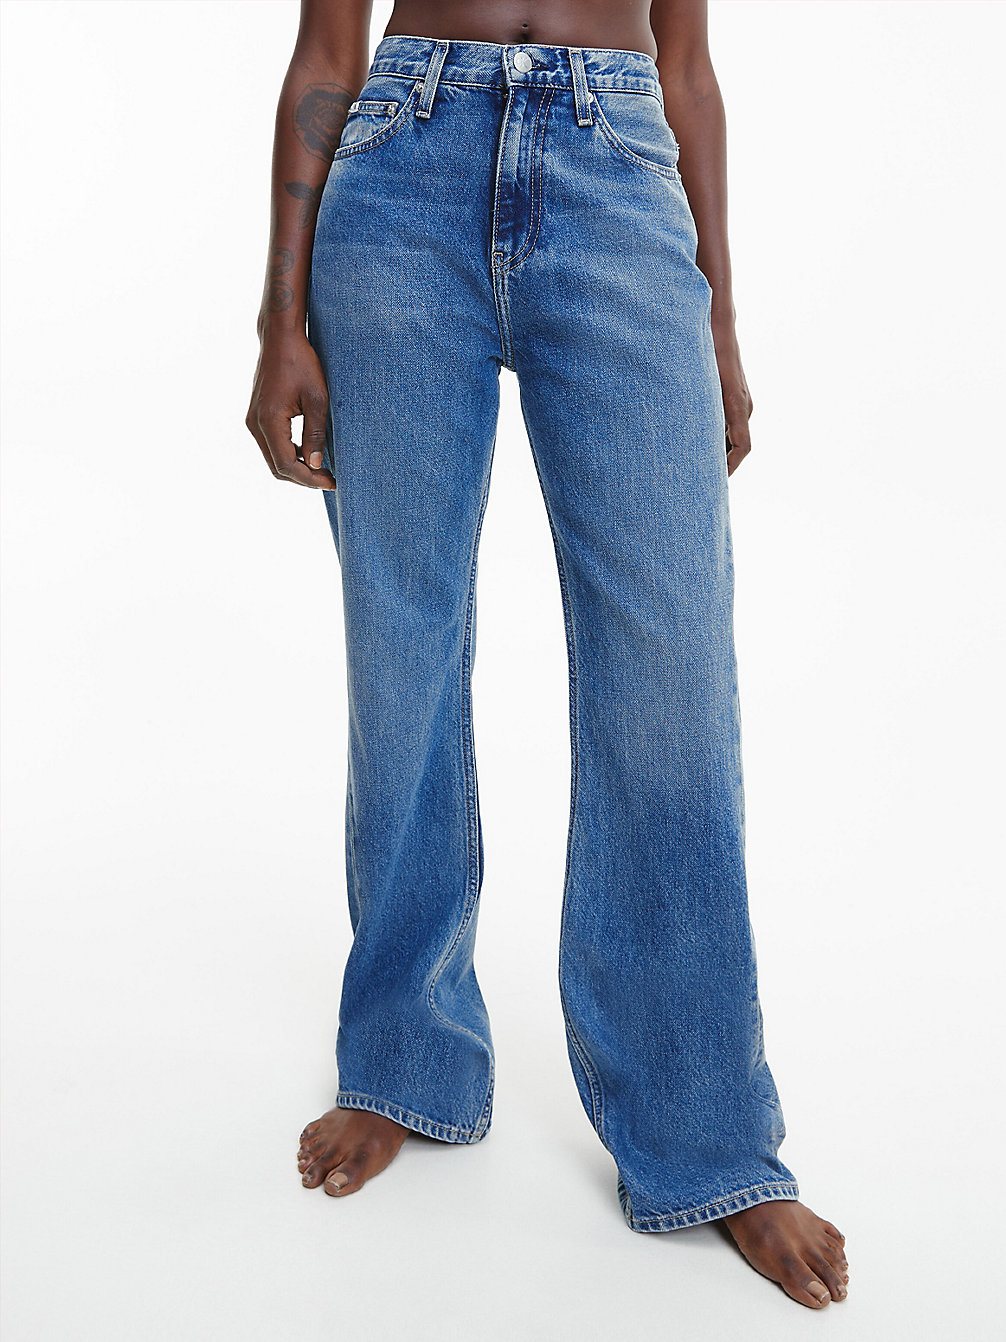 DENIM DARK Jeans Bootcut Originali undefined donna Calvin Klein